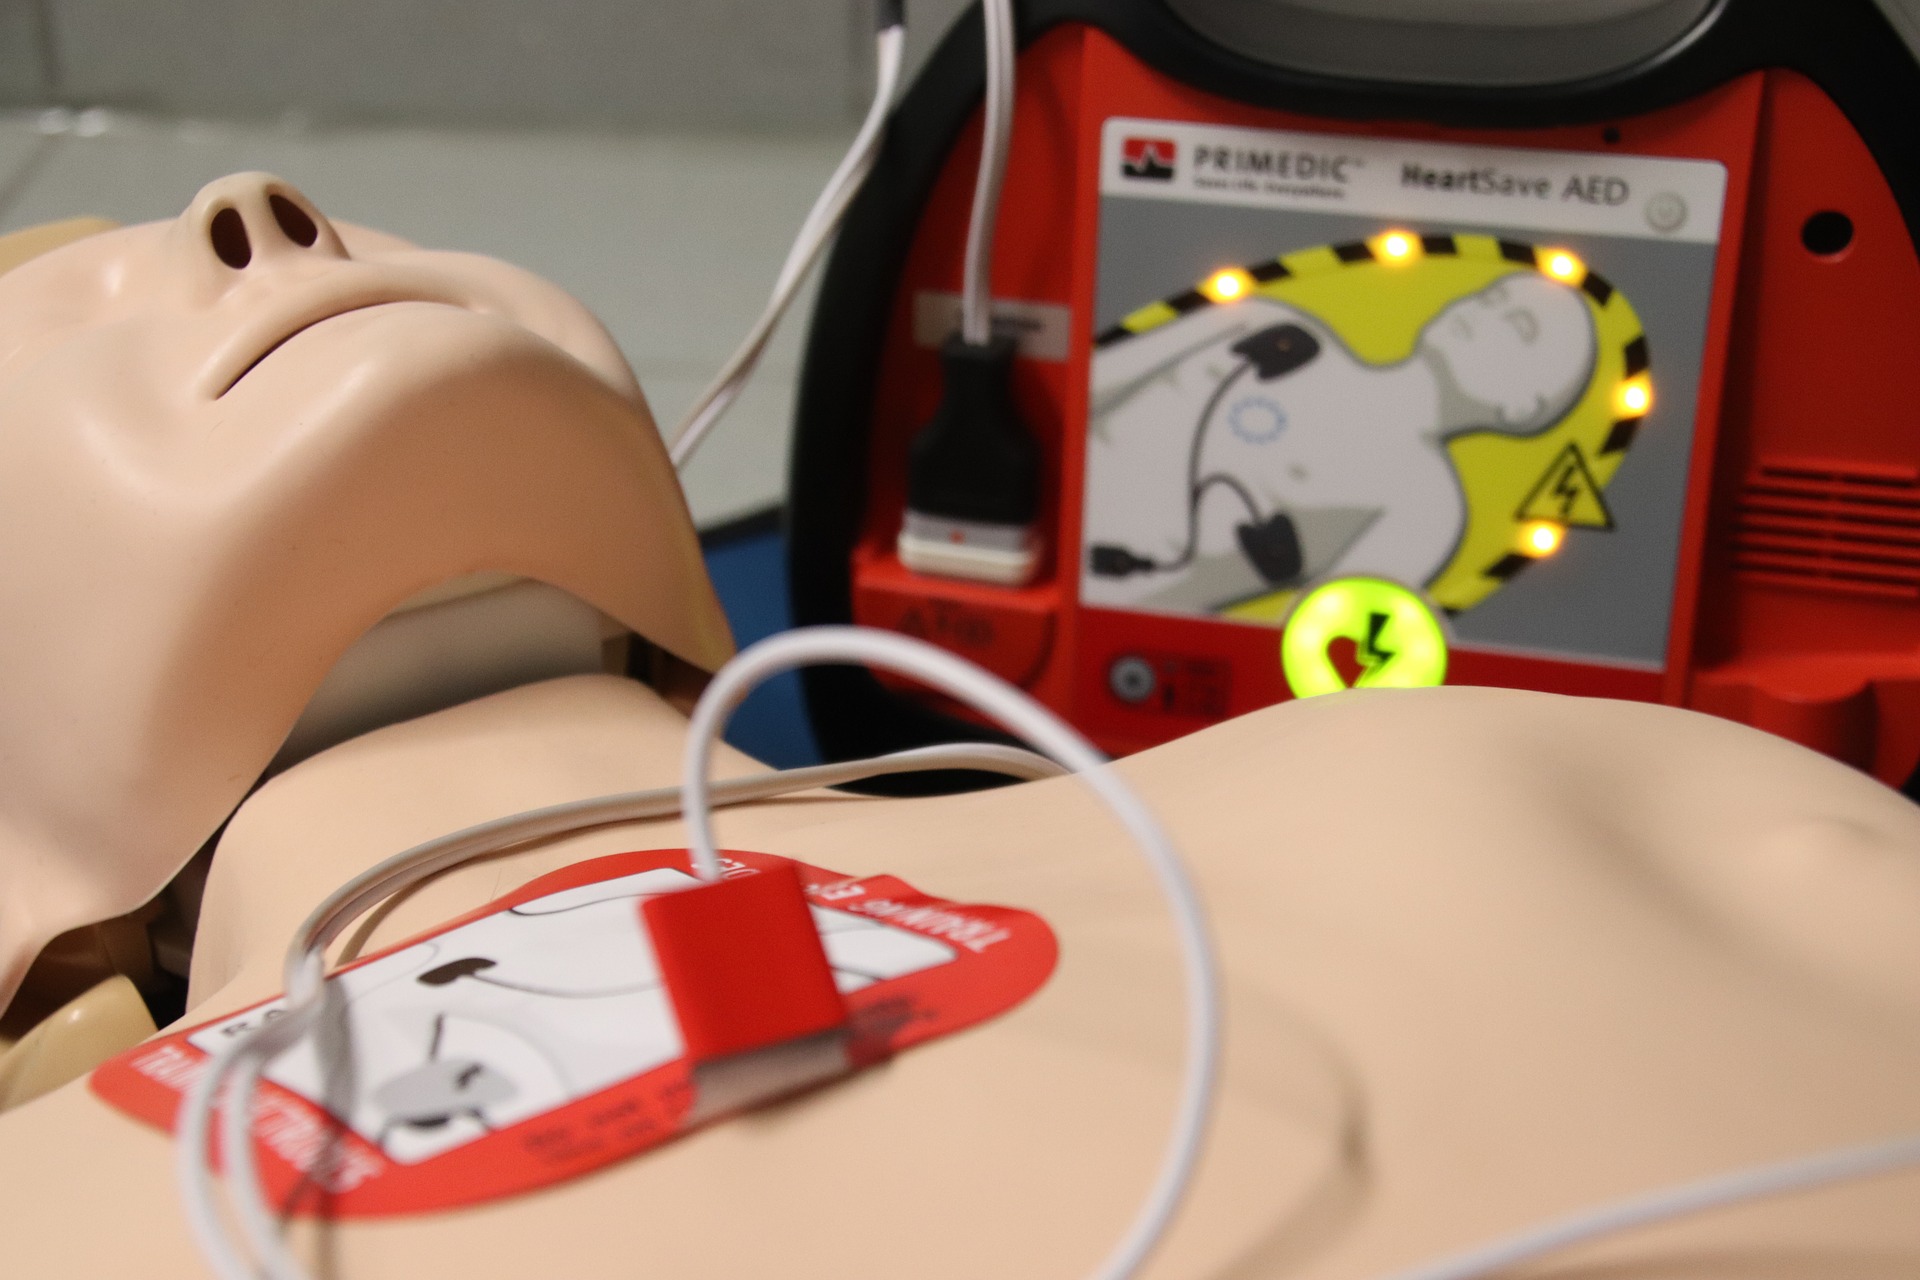 Liječnica nakon smrti učenika u Biogradu: Defibrilatori bi trebali biti i na plažama